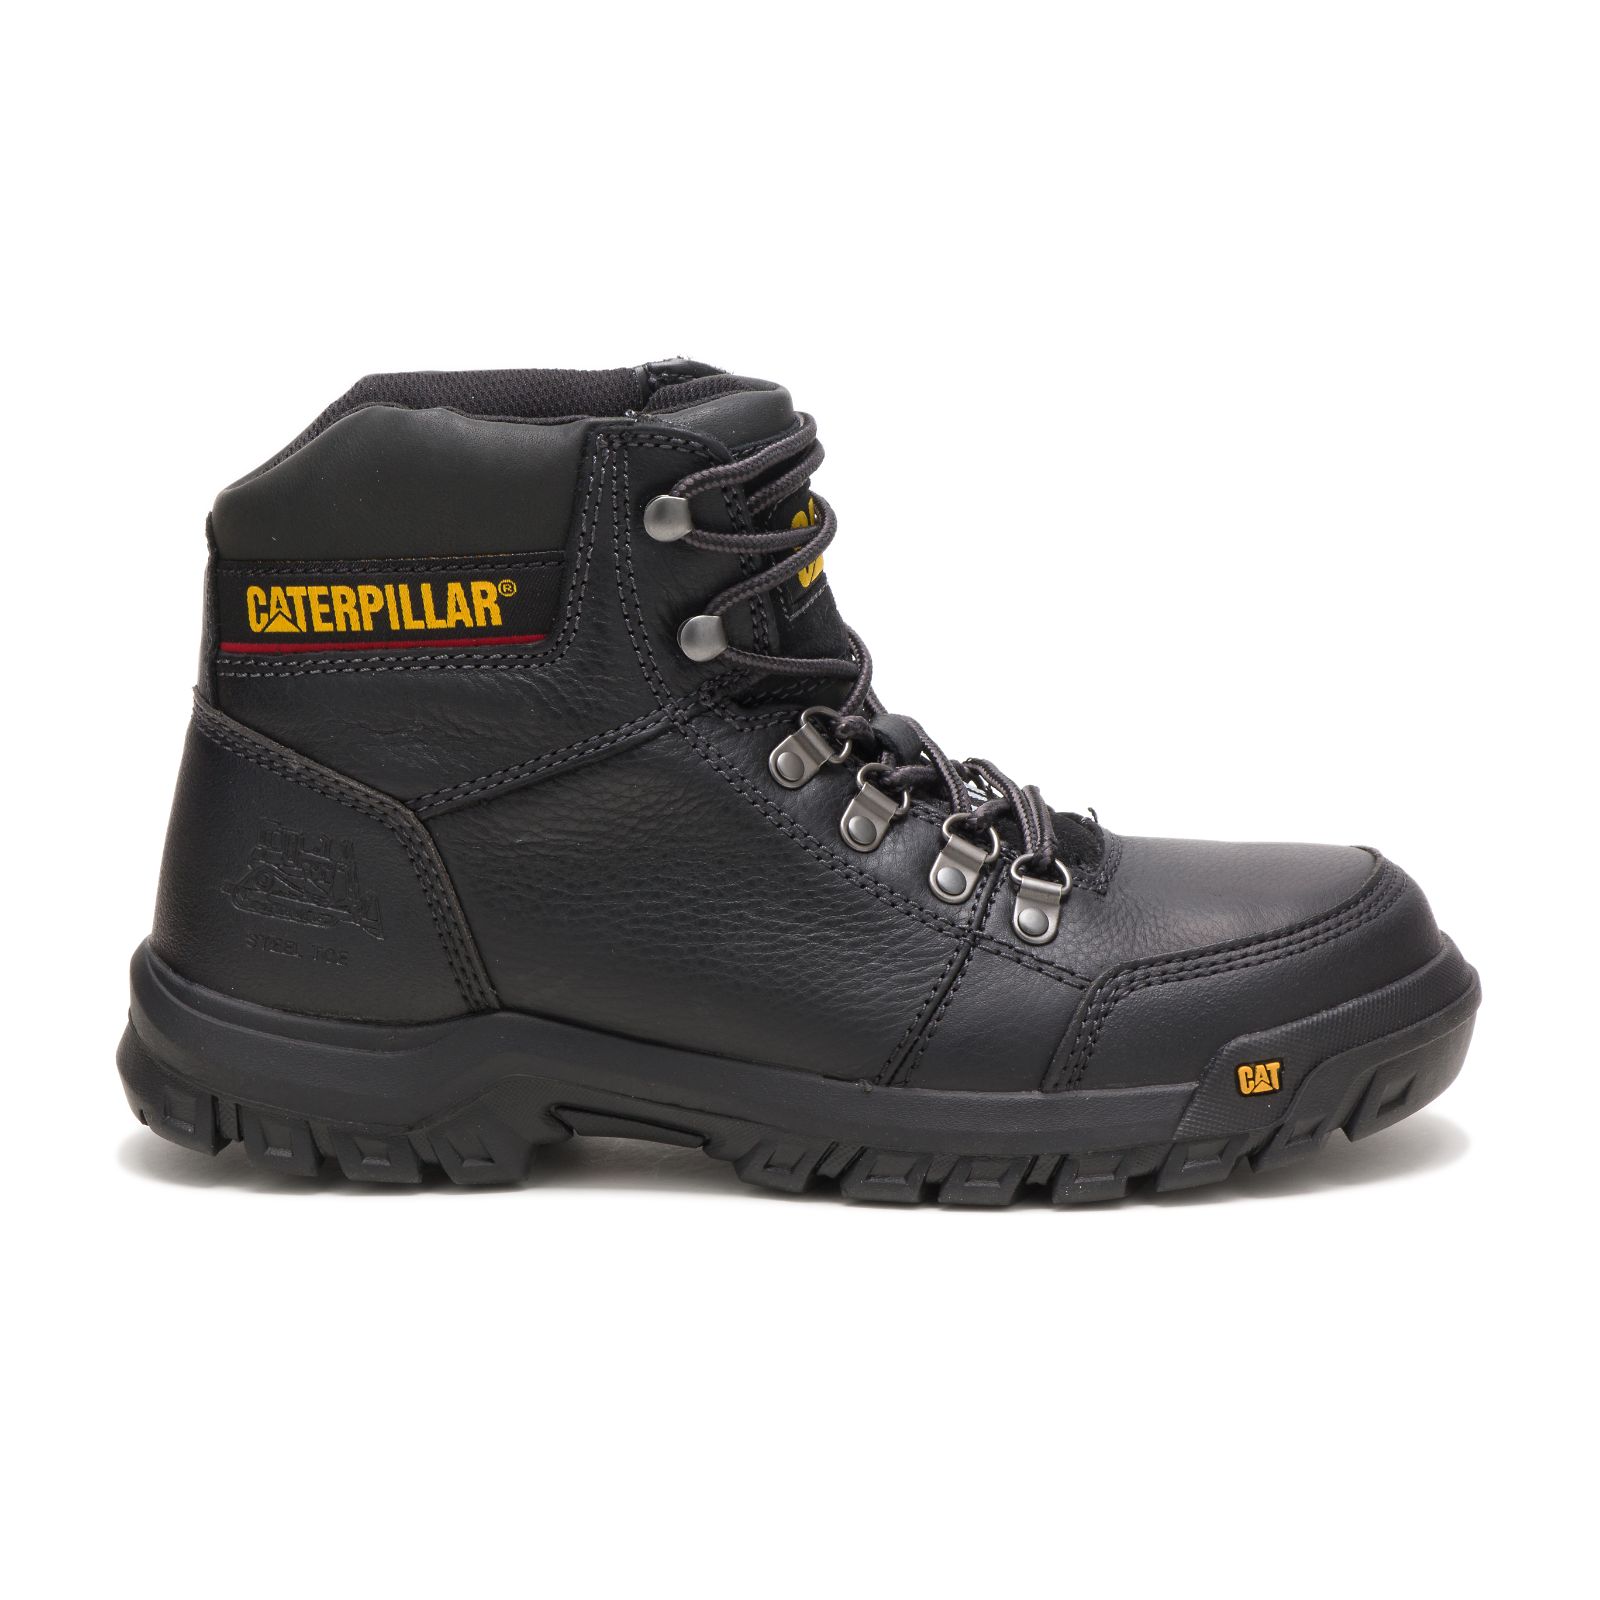 Men's Caterpillar Outline Steel Toe Work Boots Black | Cat-452096